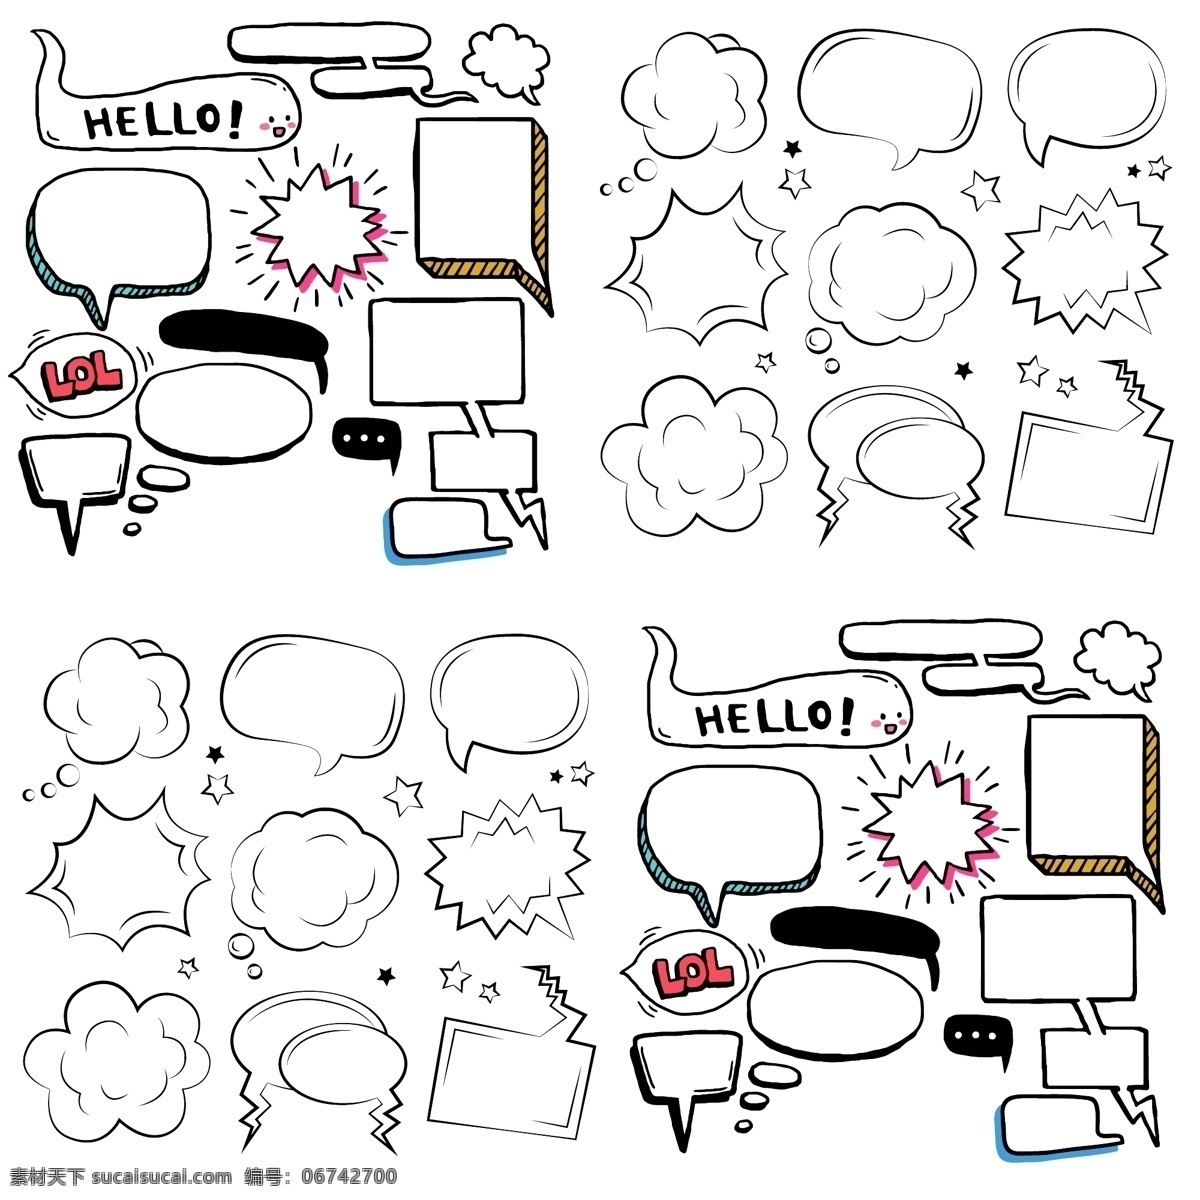 矢量对话框 线条对话框 卡通对话框 漫画对话框 对话框设计 几何对话框 矢量素材 标志图标 其他图标